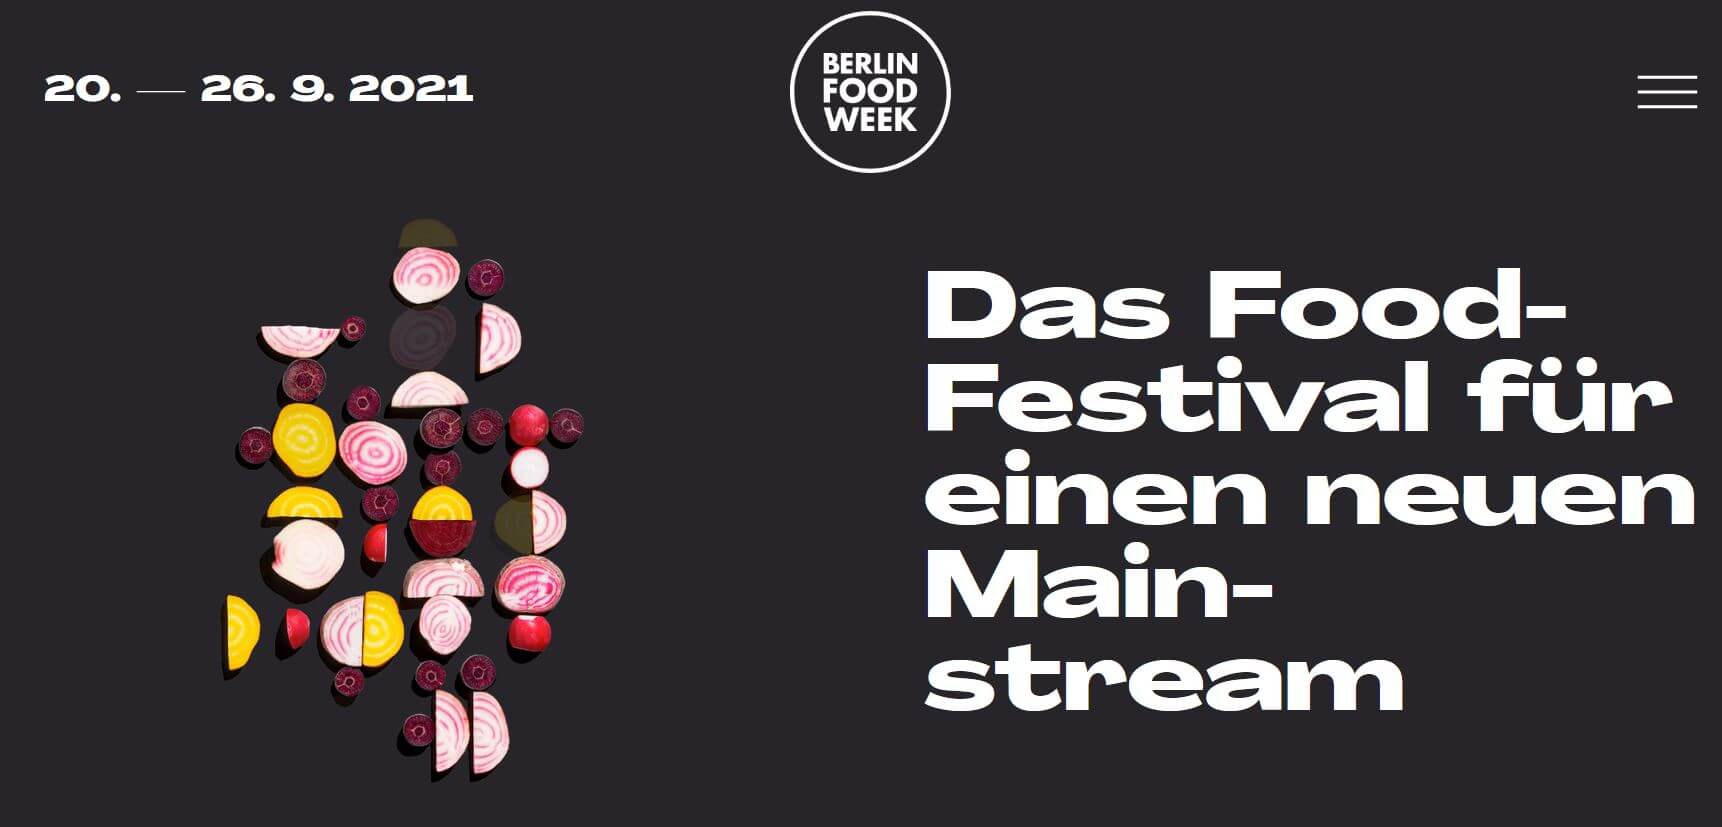 Berlin Food Week 2021